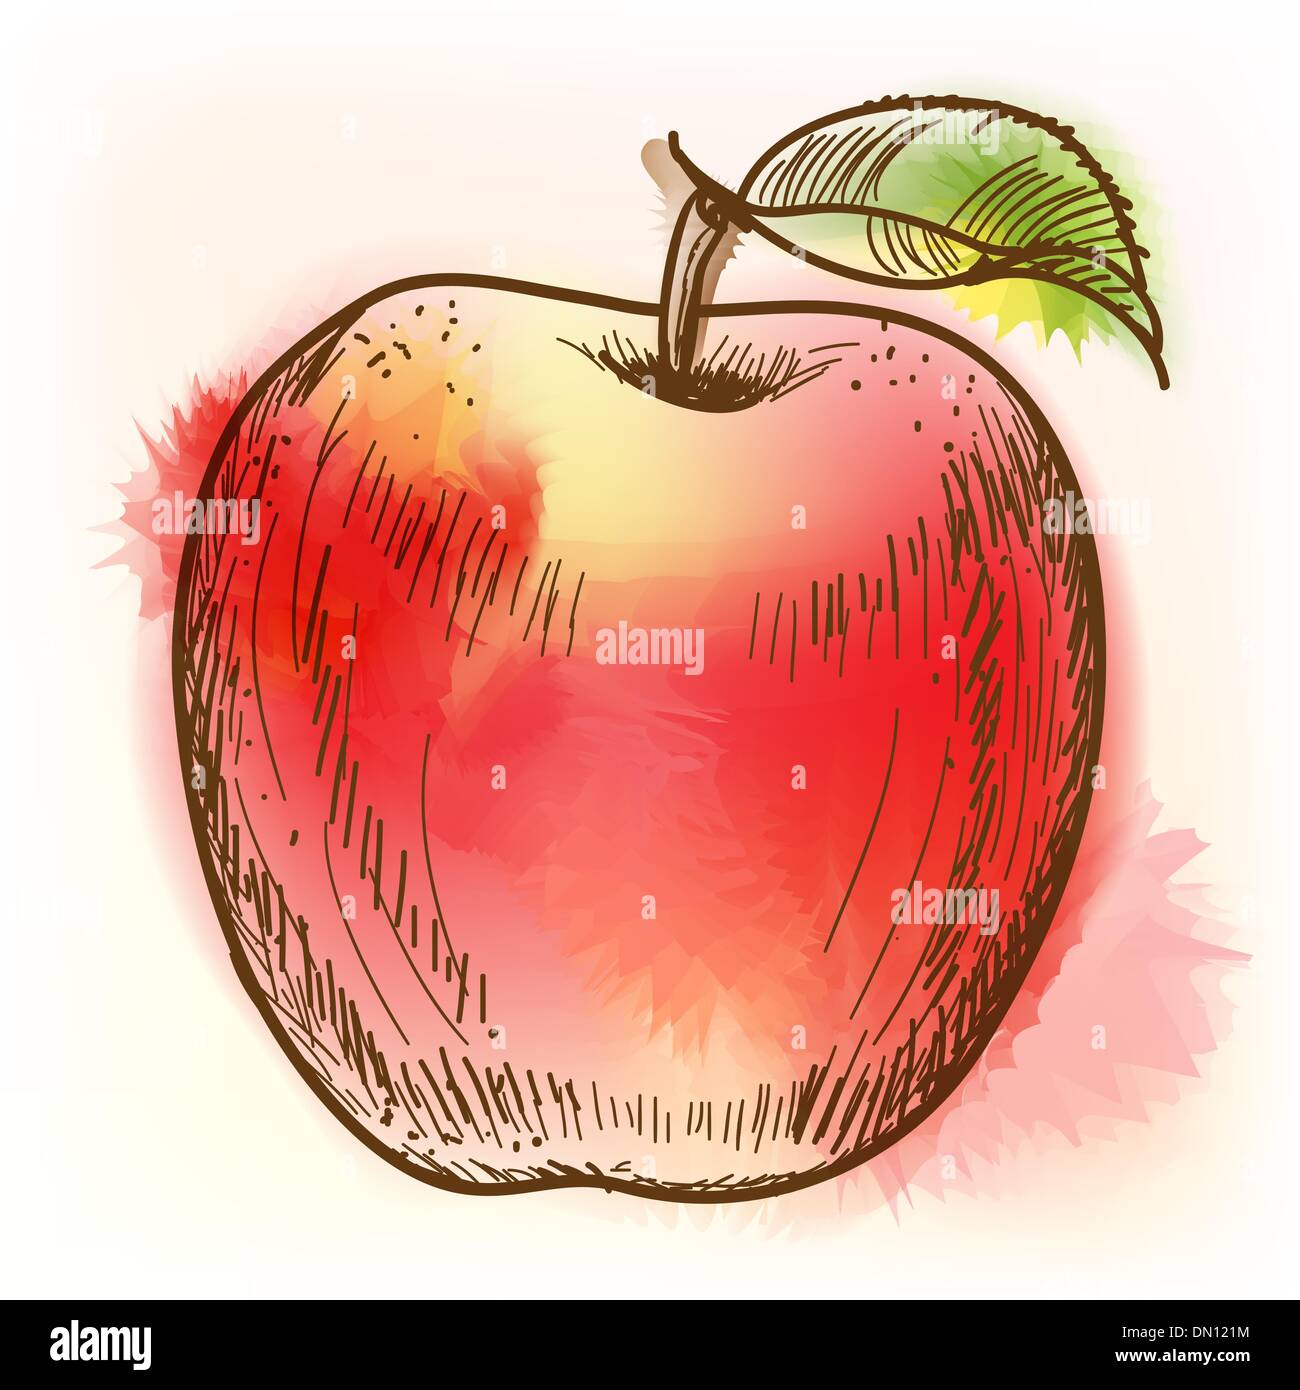 Roter Apfel, Aquarell Malerei Stock Vektor